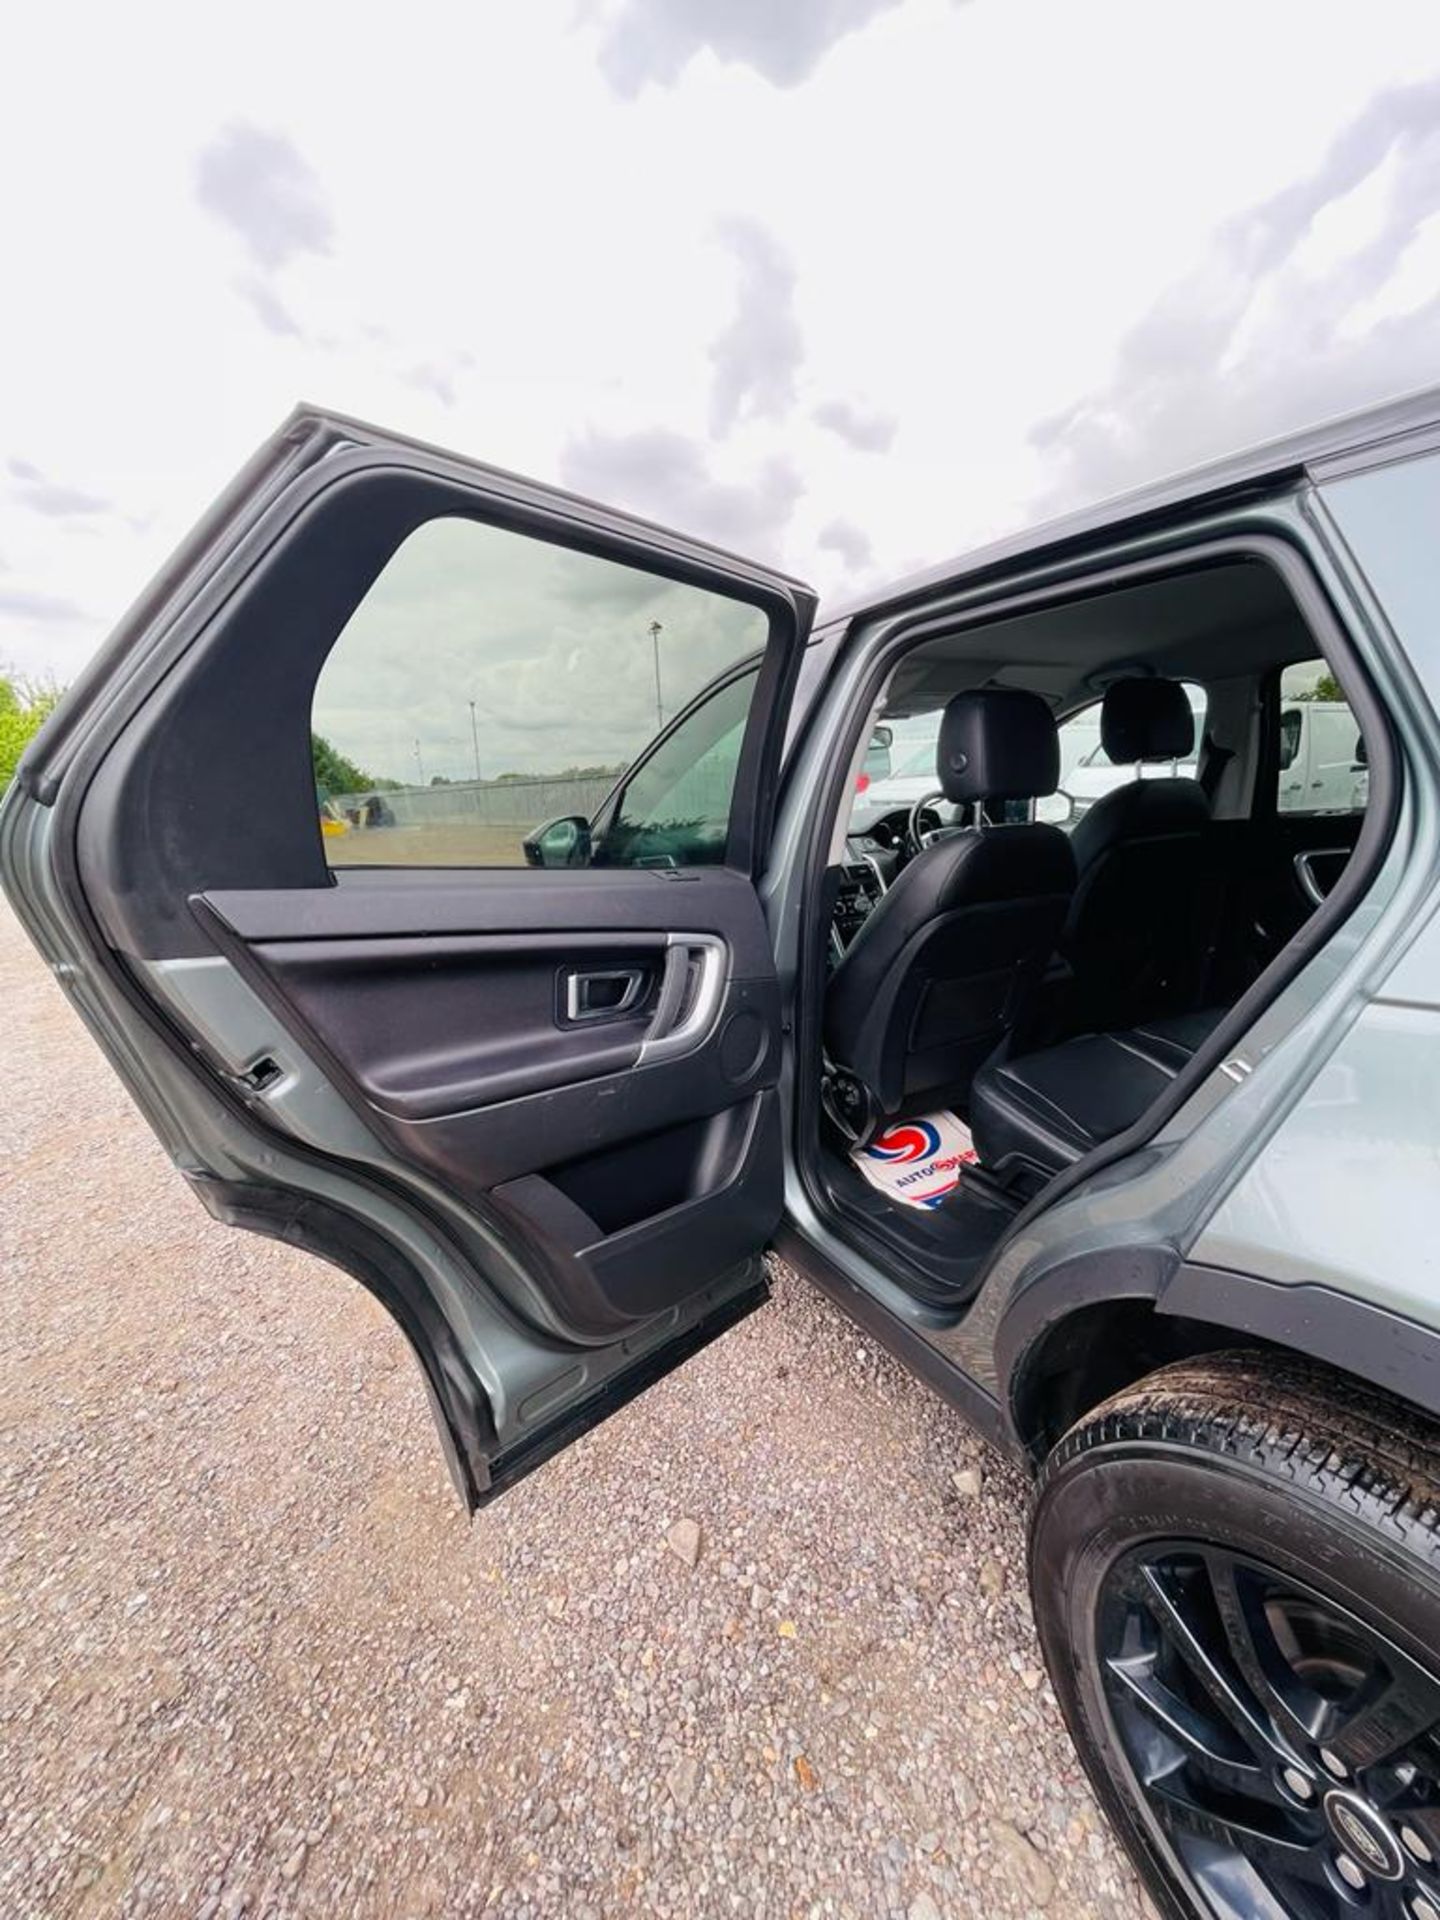 ** ON SALE ** Land Rover Discovery Sport 2.0 180 TD4 SE Tech 2018 '18 Reg' 7 Seats - Sat Nav - ULEZ - Image 28 of 30